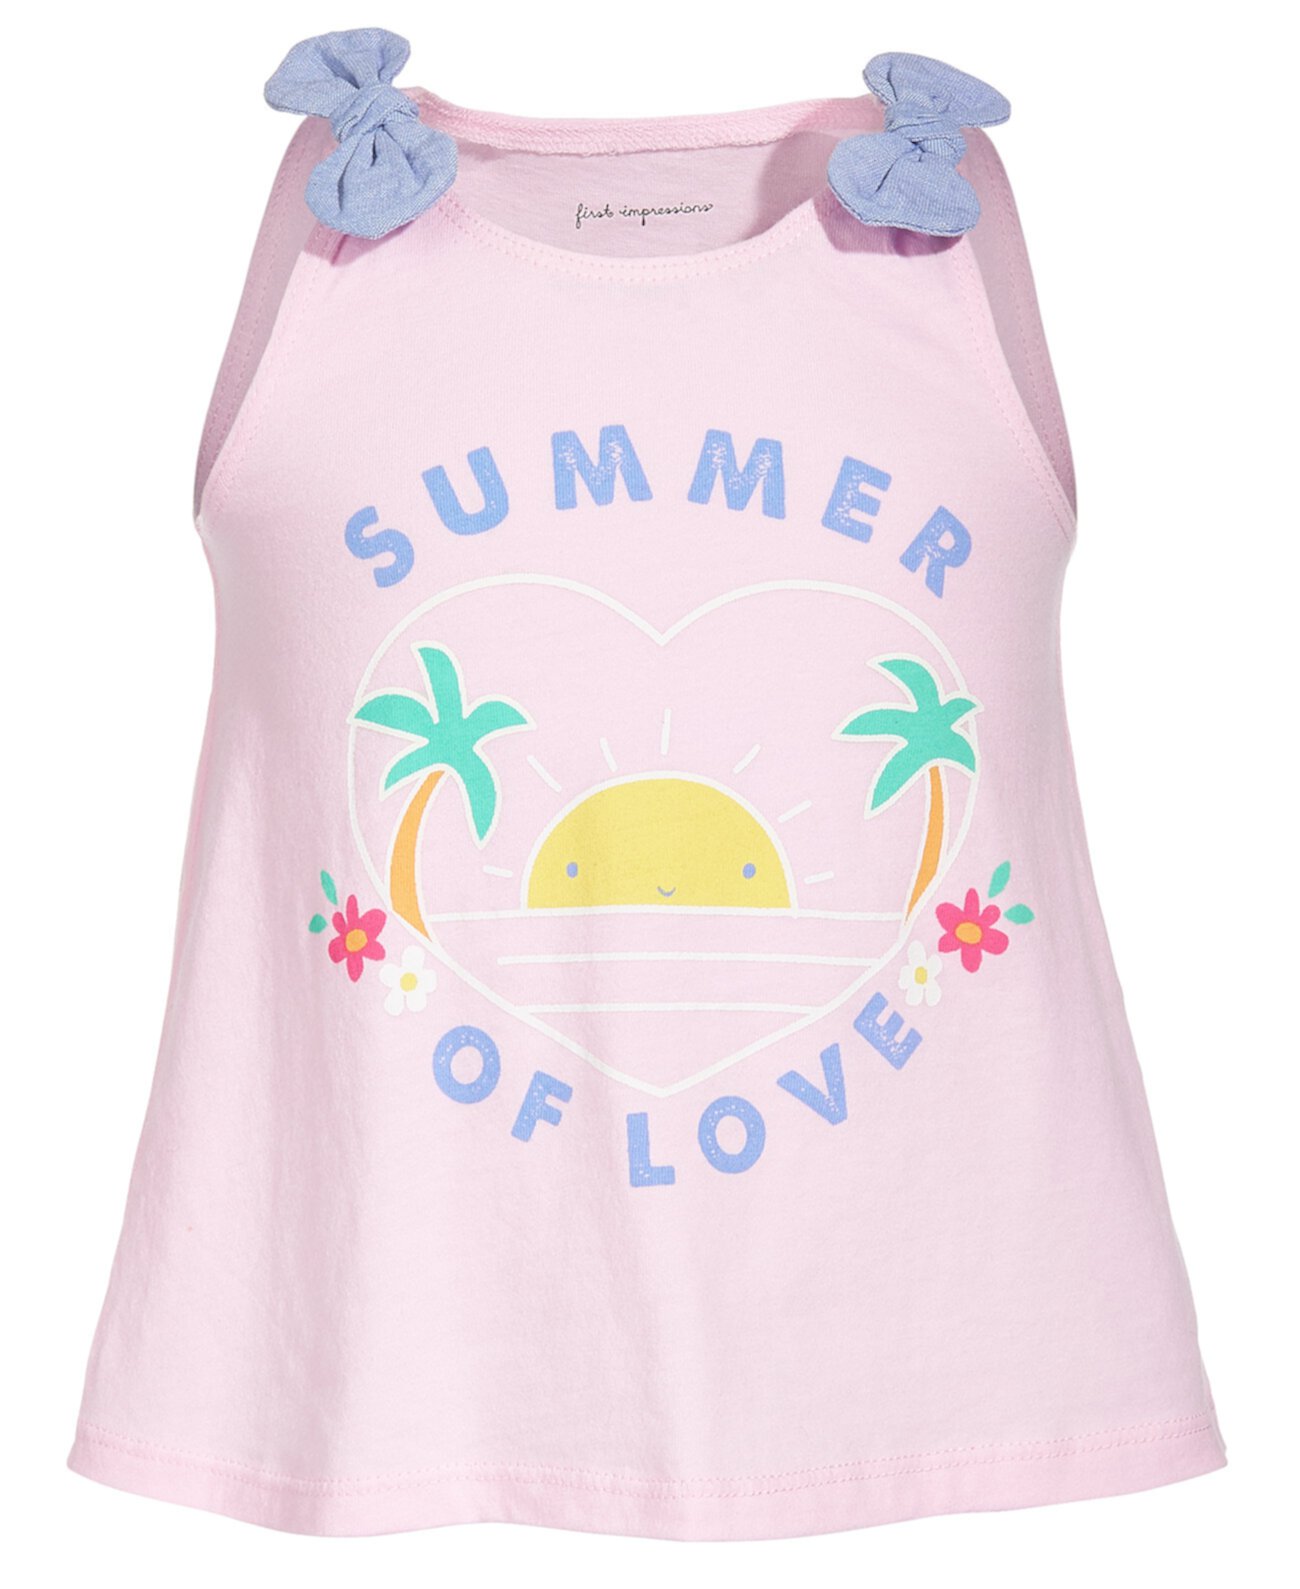 Хлопковый топ Summer Love для маленьких девочек, созданный для Macy's First Impressions